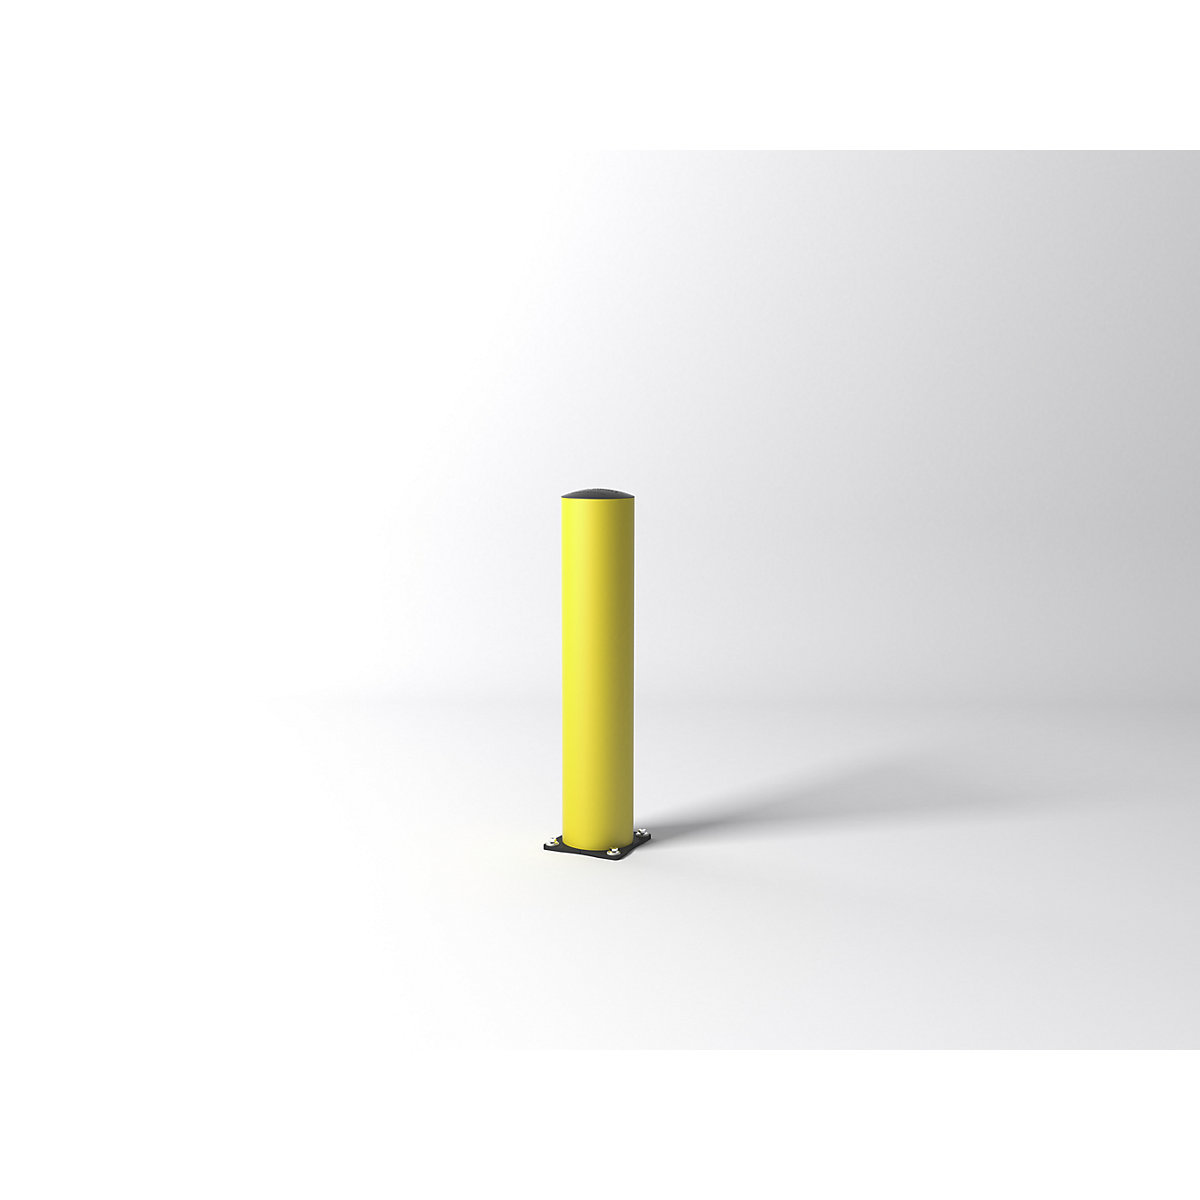 Poste de proteção contra impactos FLEX IMPACT, Ø 200 mm, altura 1000 mm, placa de solo galvanizada, amarela